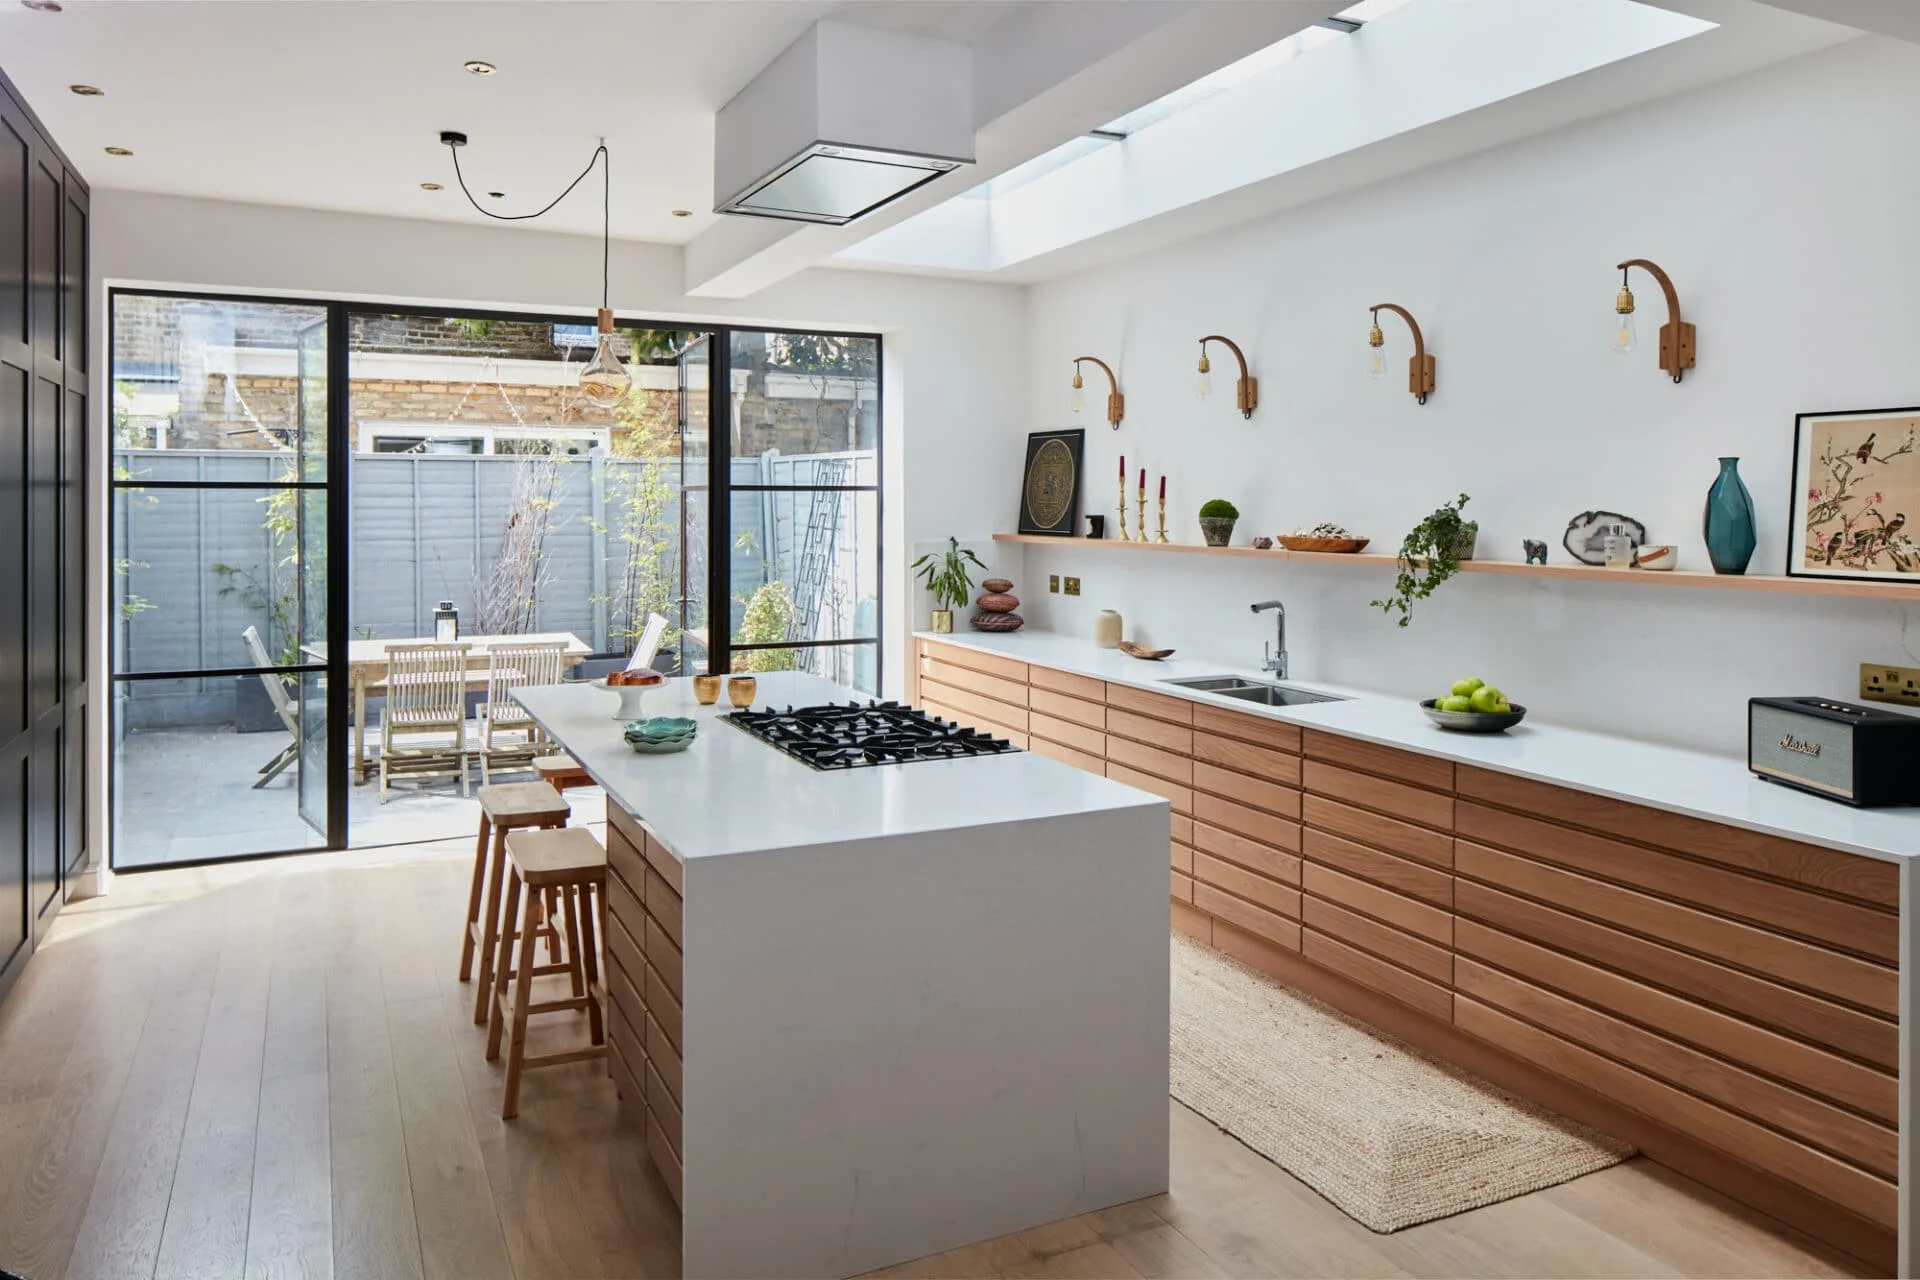 Thiết kế nhà bếp hiện đại không gian hẹp